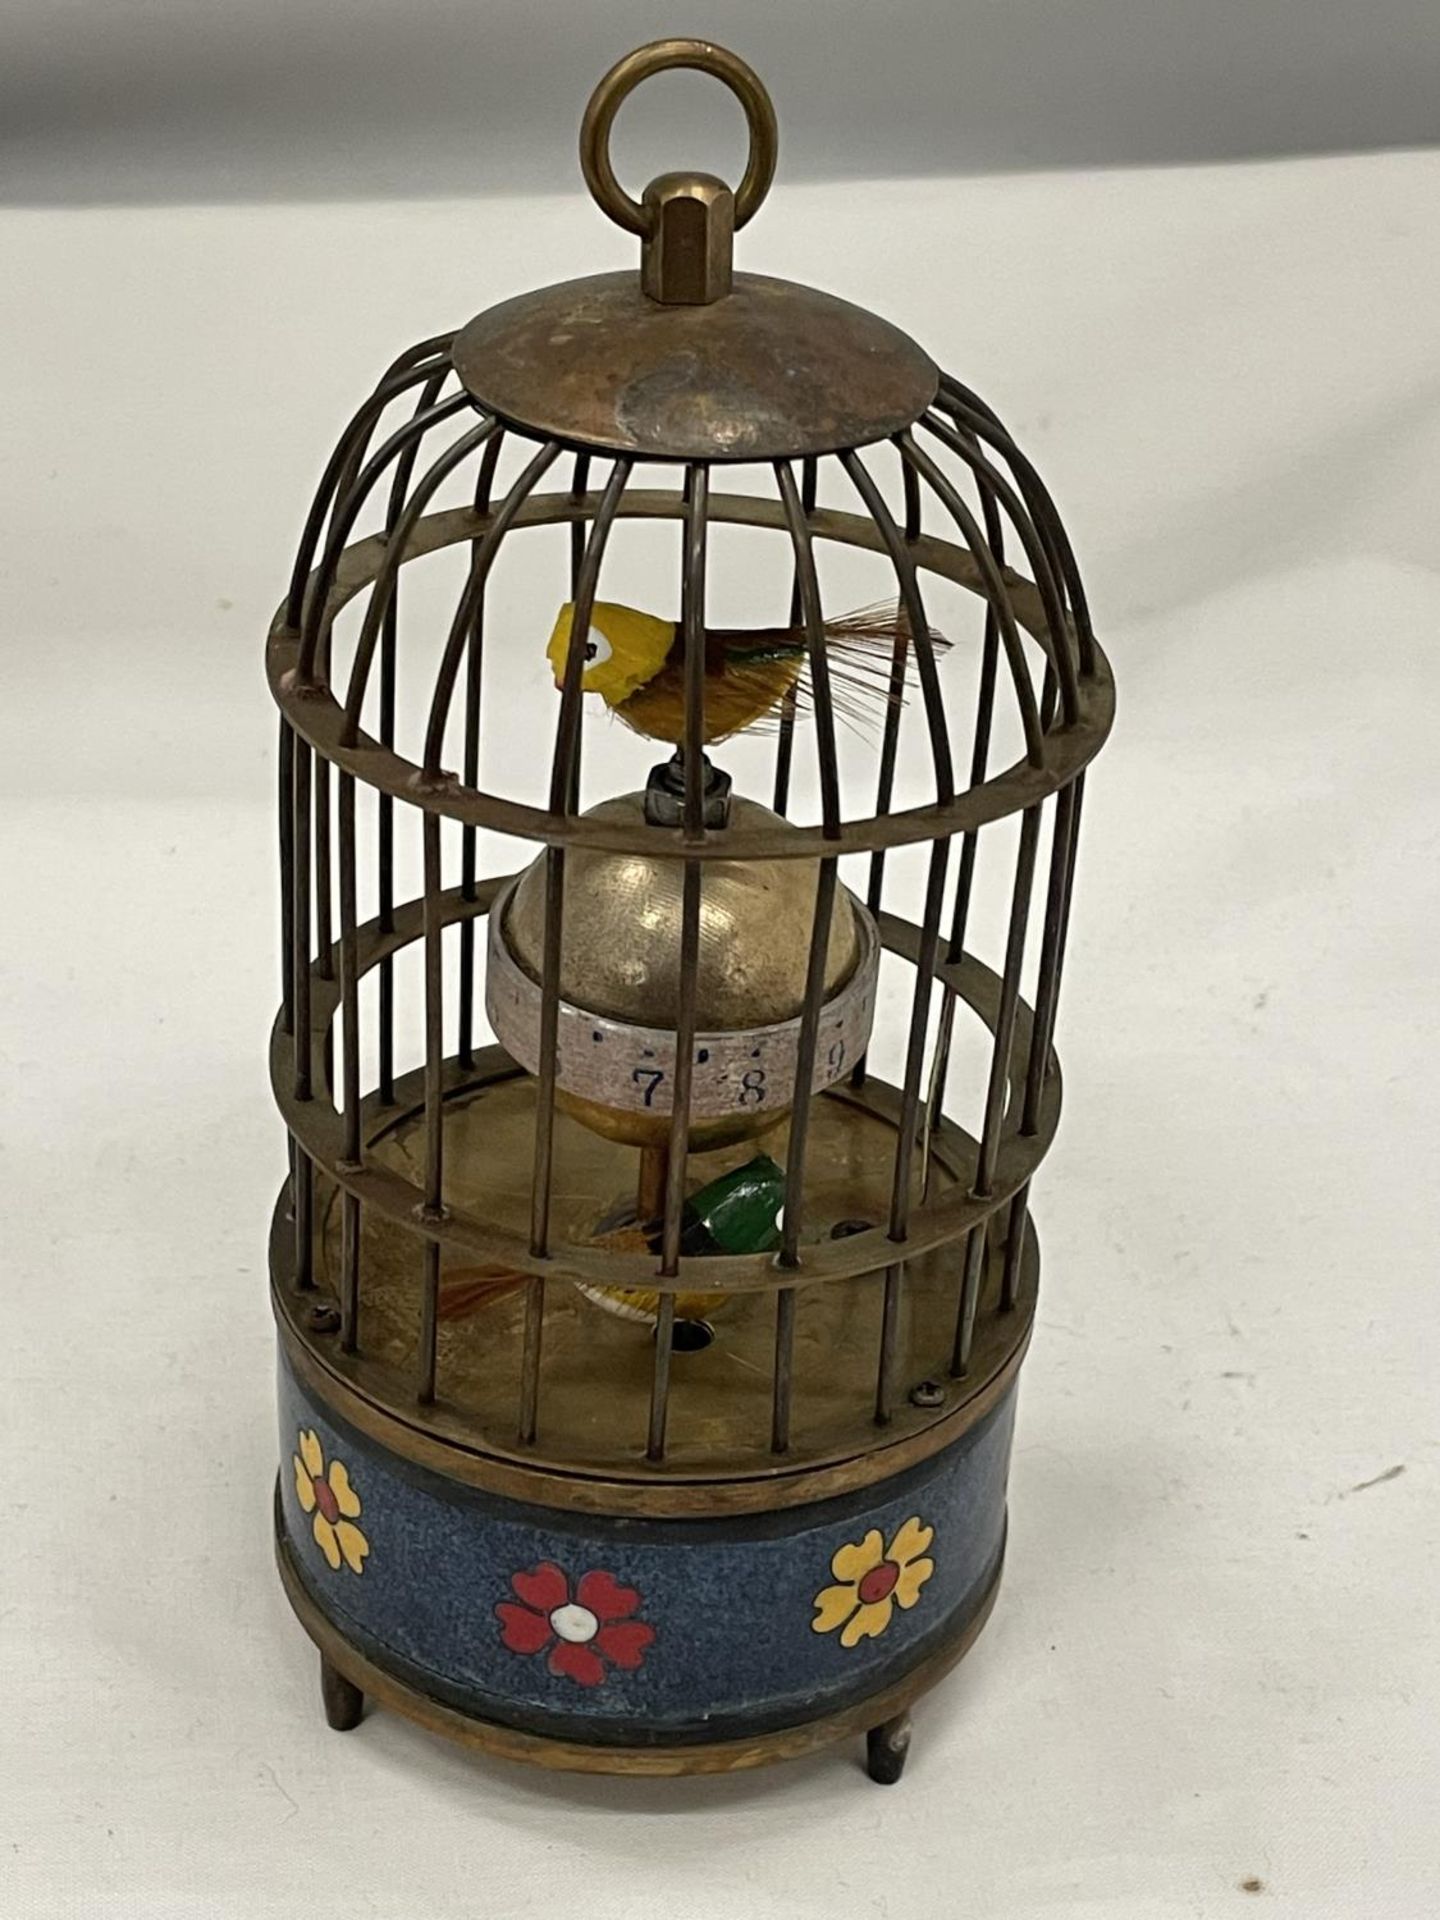 A BRASS BIRD CAGE CLOCK